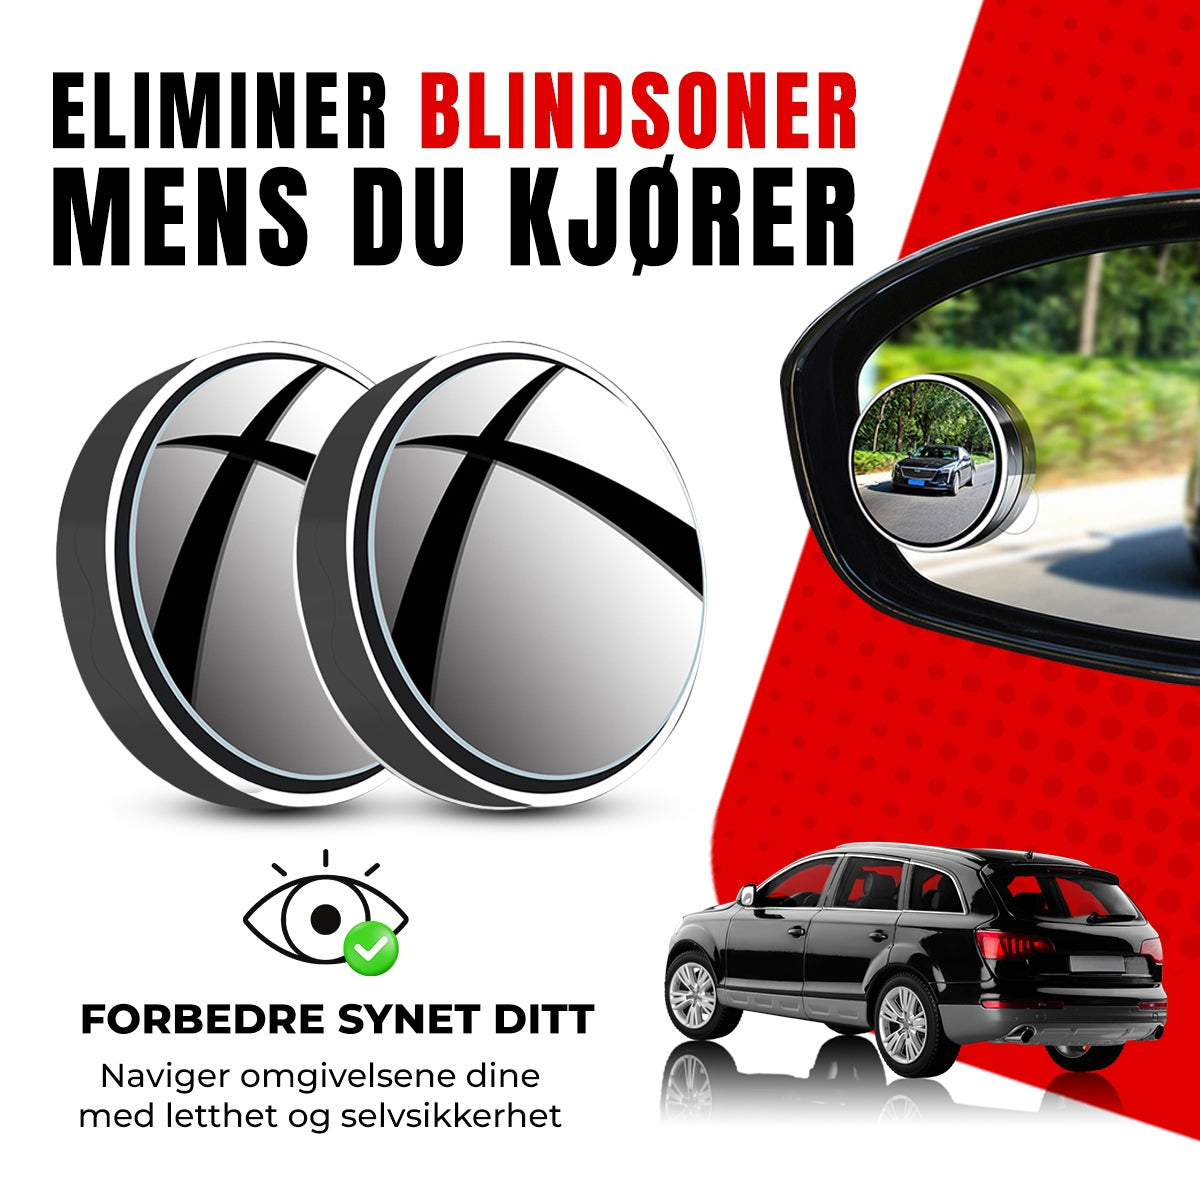 ClearPoint™ - Bilspeil for Blindsoner (4 stk)